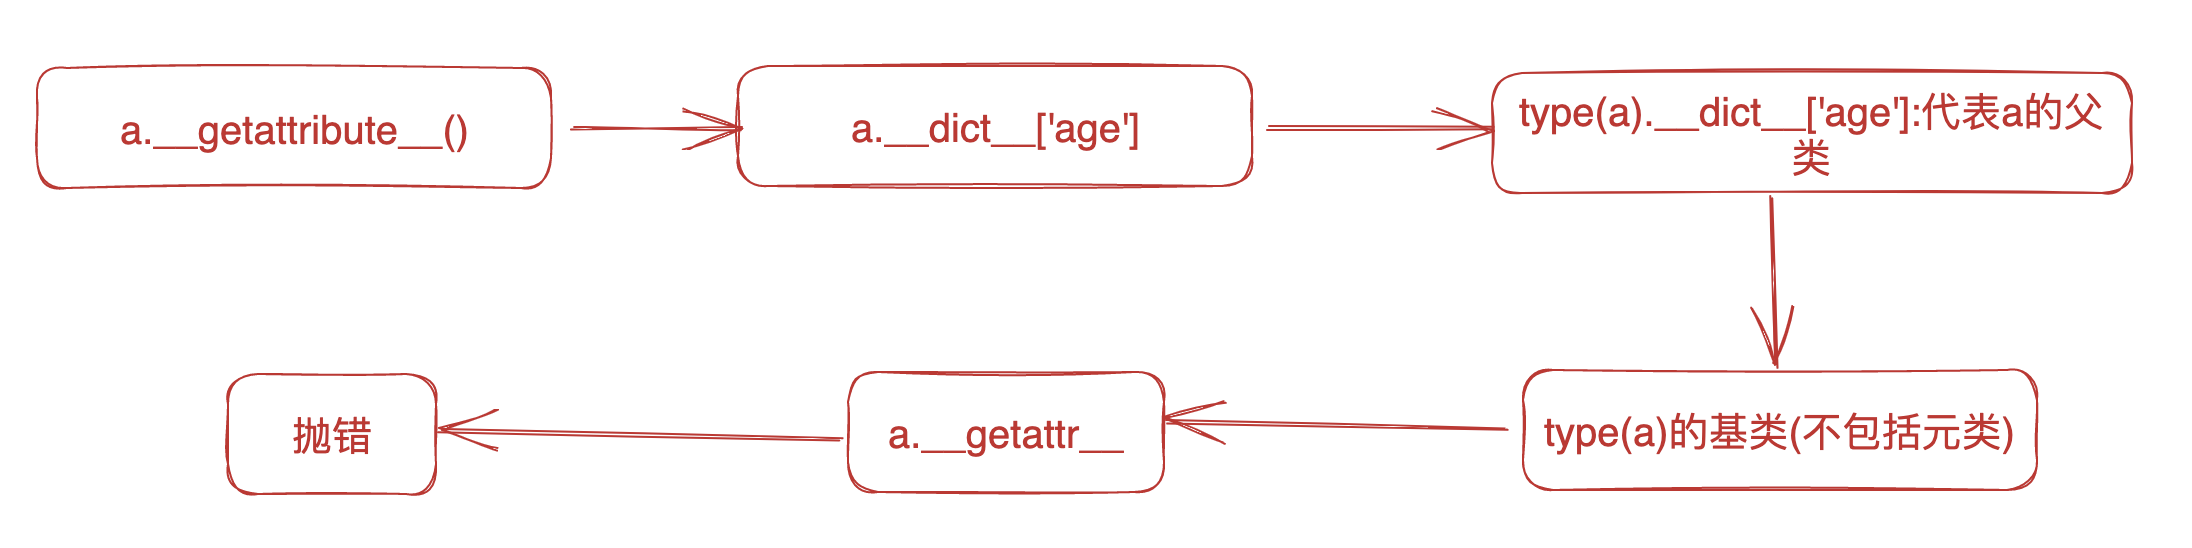 浅谈对属性描述符__get__、__set__、__delete__的理解